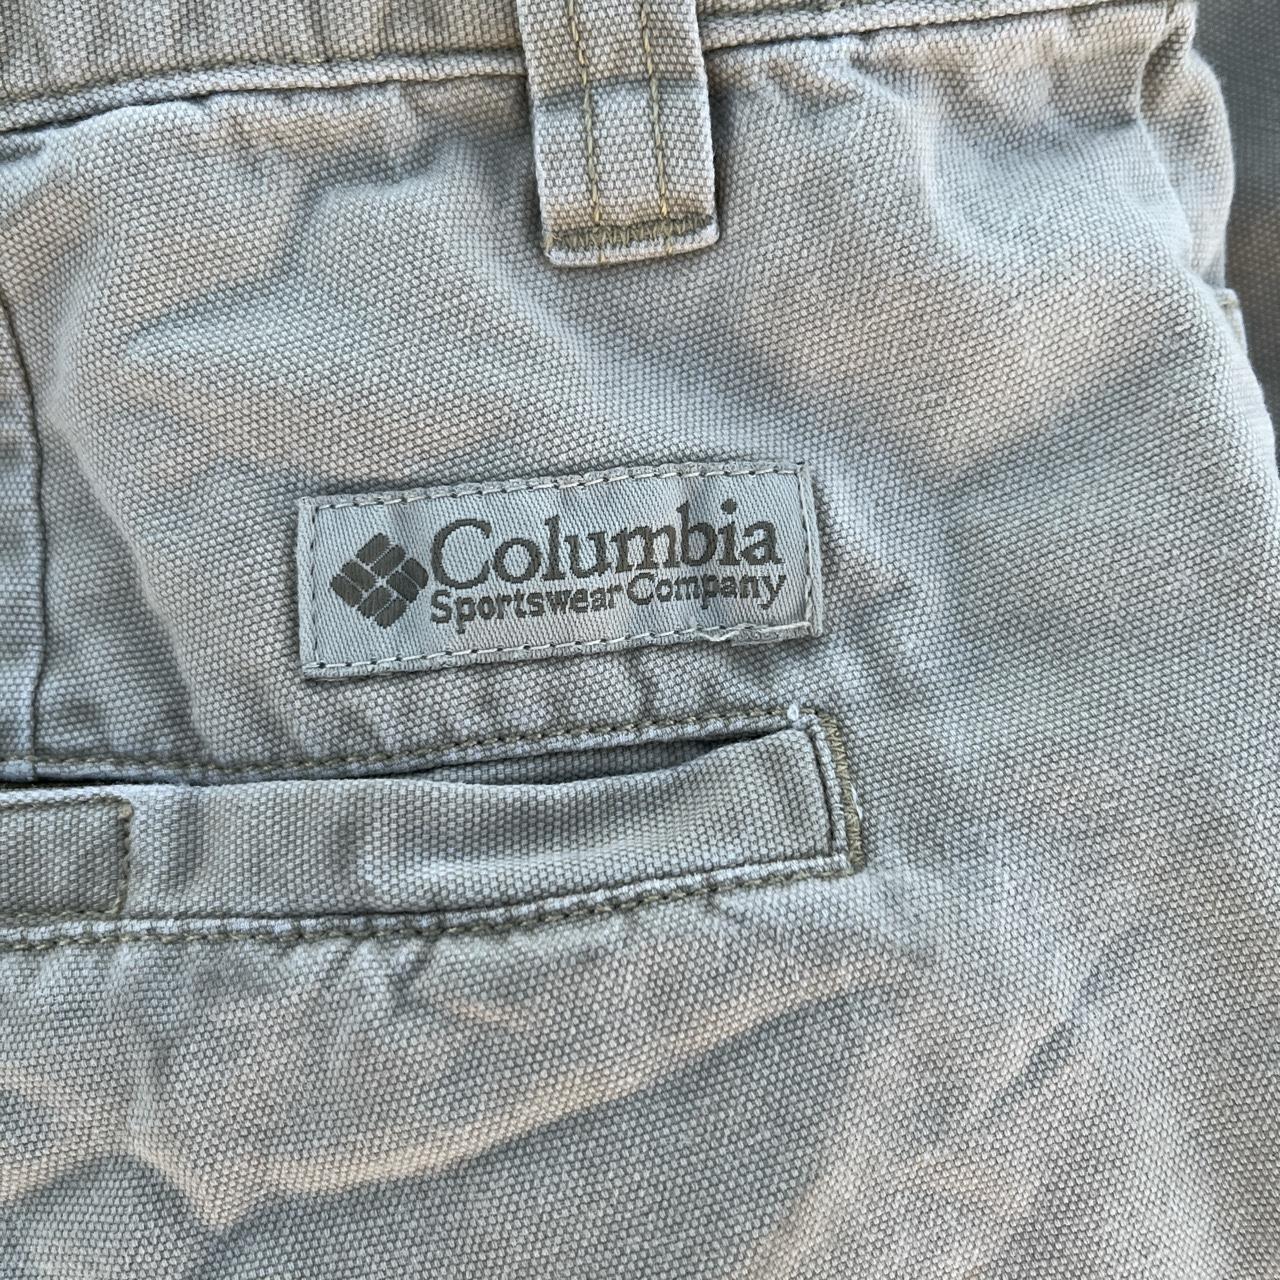 Columbia cargo zip off pants Zipper at the knee for... - Depop